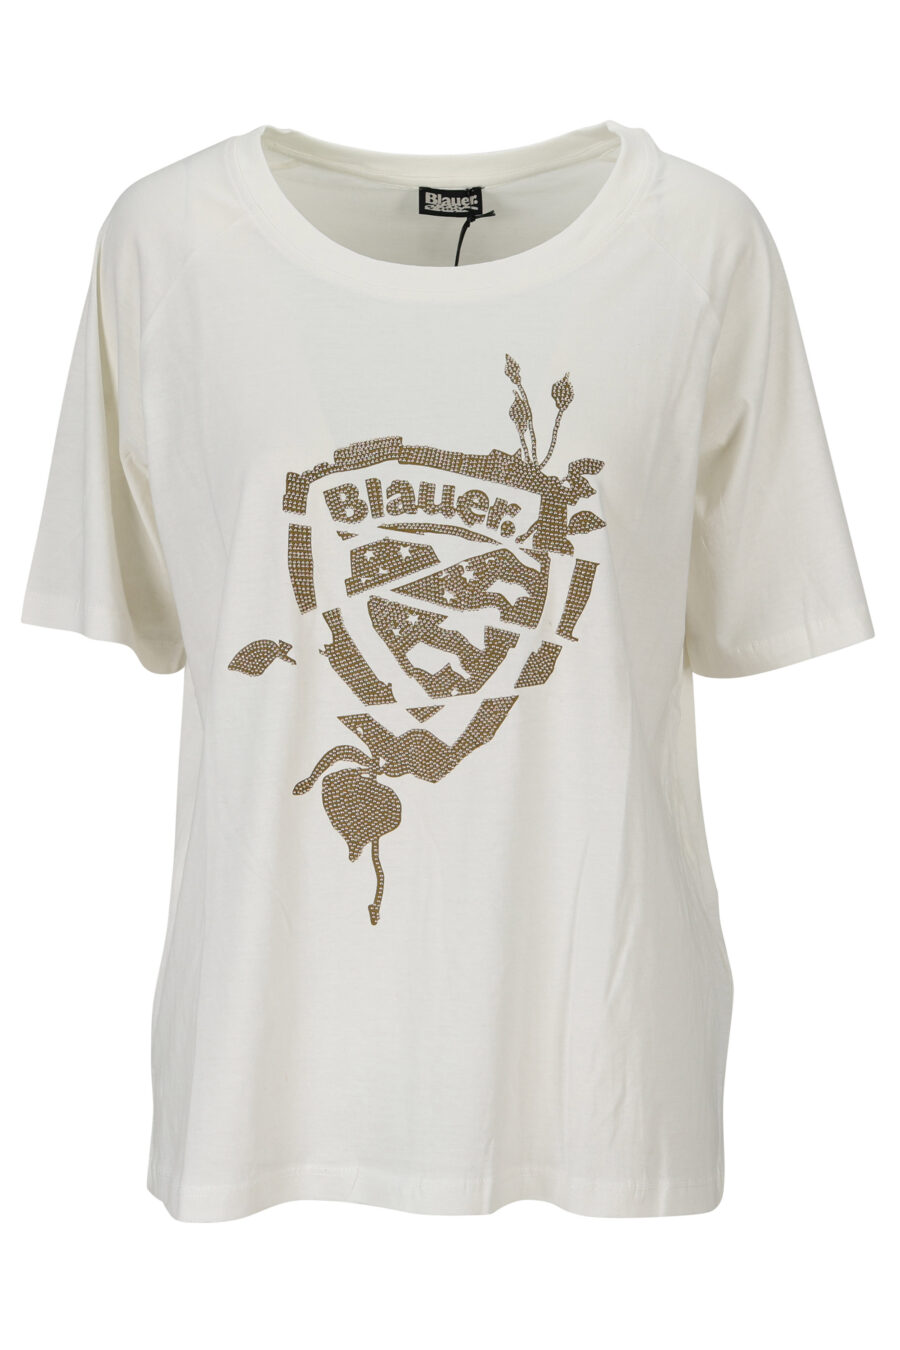 Camiseta blanca con maxilogo "strass" - 8058610837020